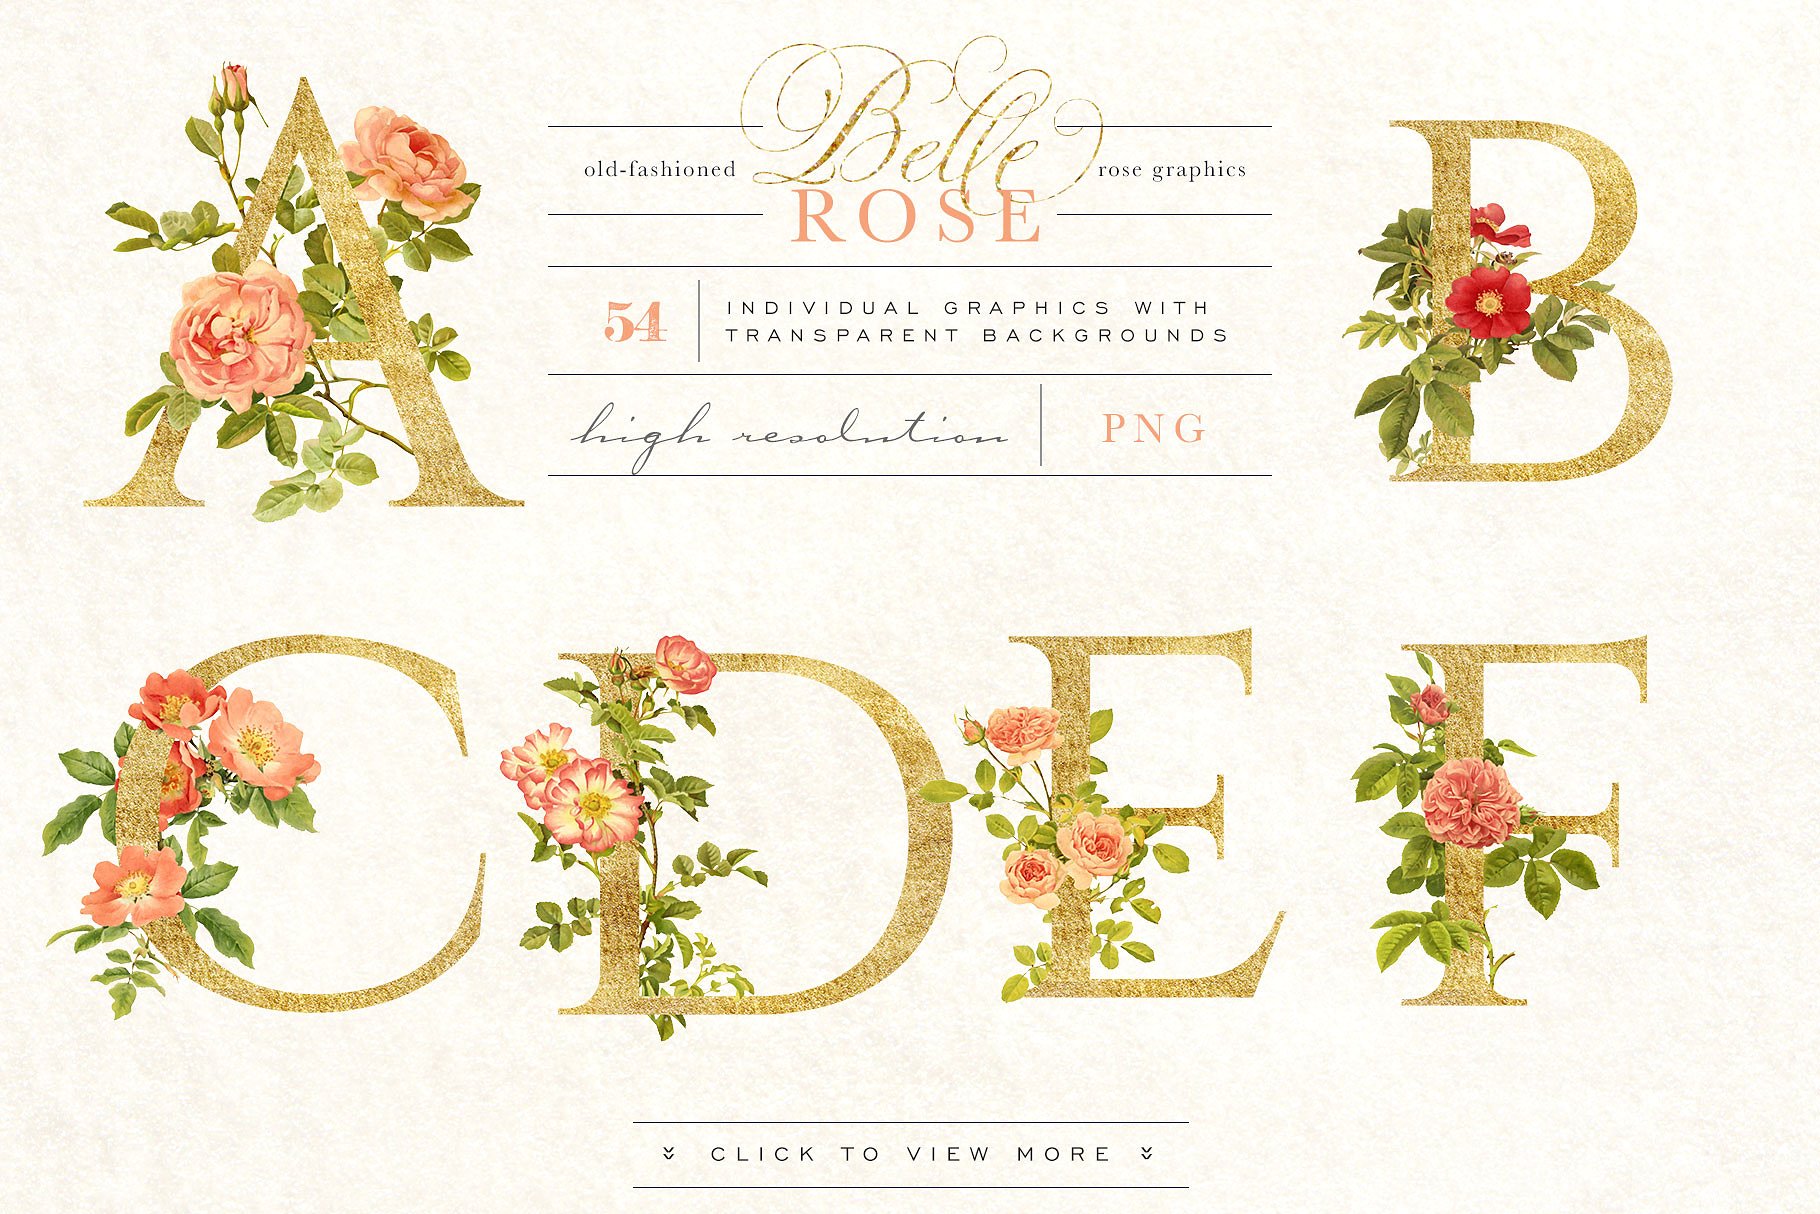 旧时尚老派水彩玫瑰花卉剪贴画合集 Belle Rose Antique Graphics Bundle插图(5)